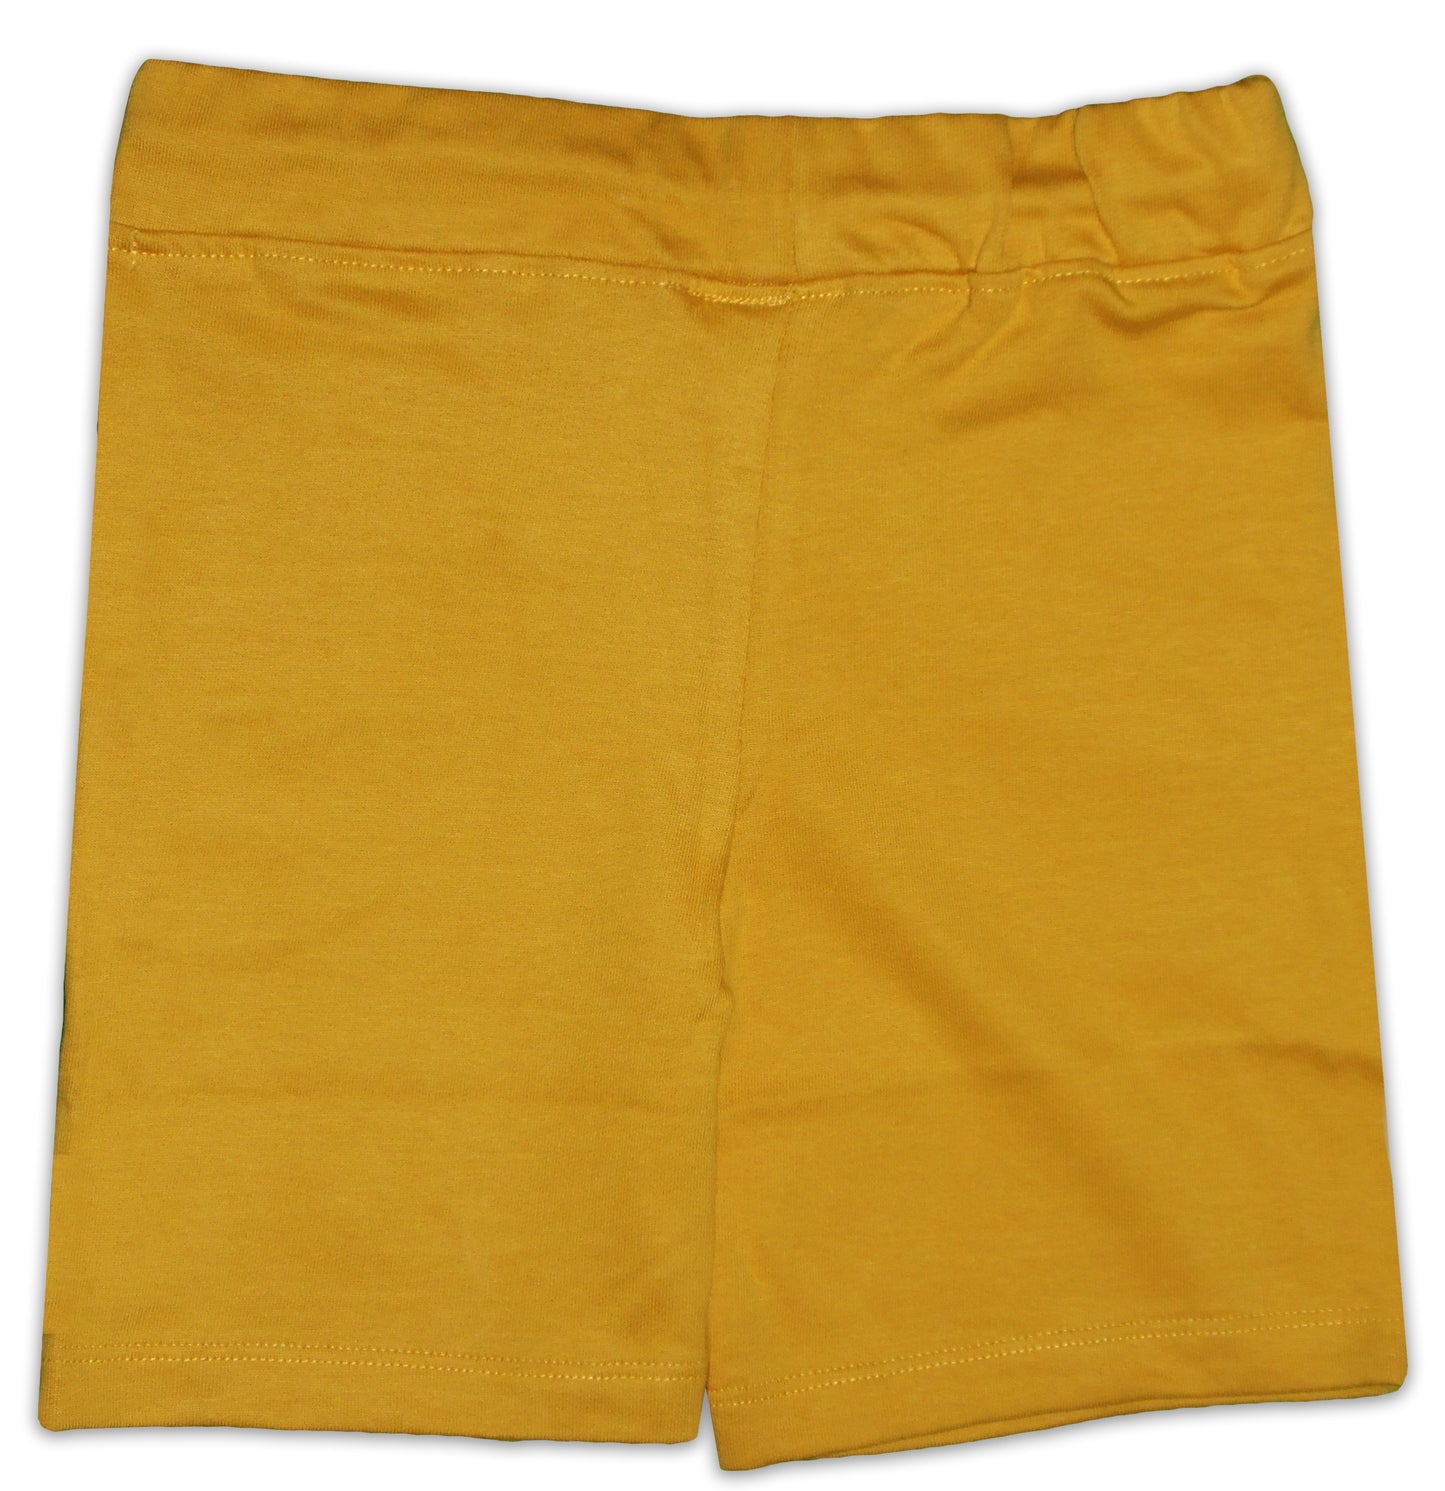 SHOPPE 'N' SMILE Kids Yellow Cotton Sports Shorts